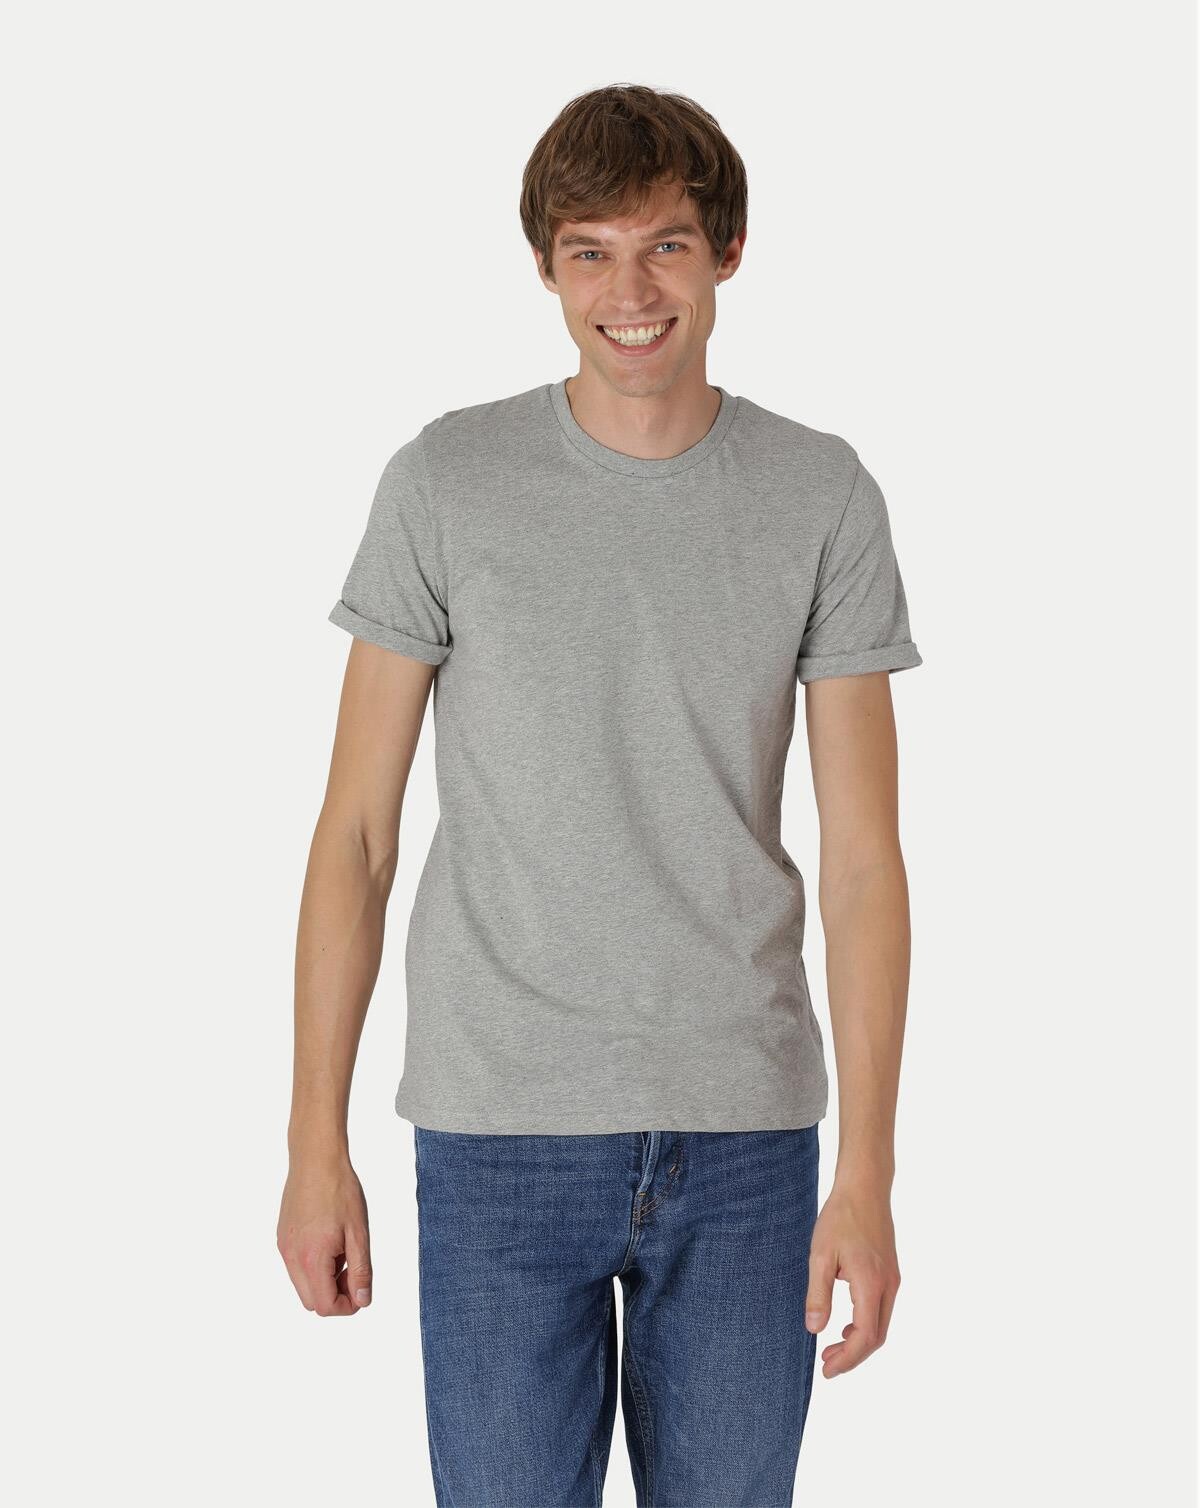 Neutral Organic - Mens Roll Up Sleeve T-shirt (Grå Meleret, XL)